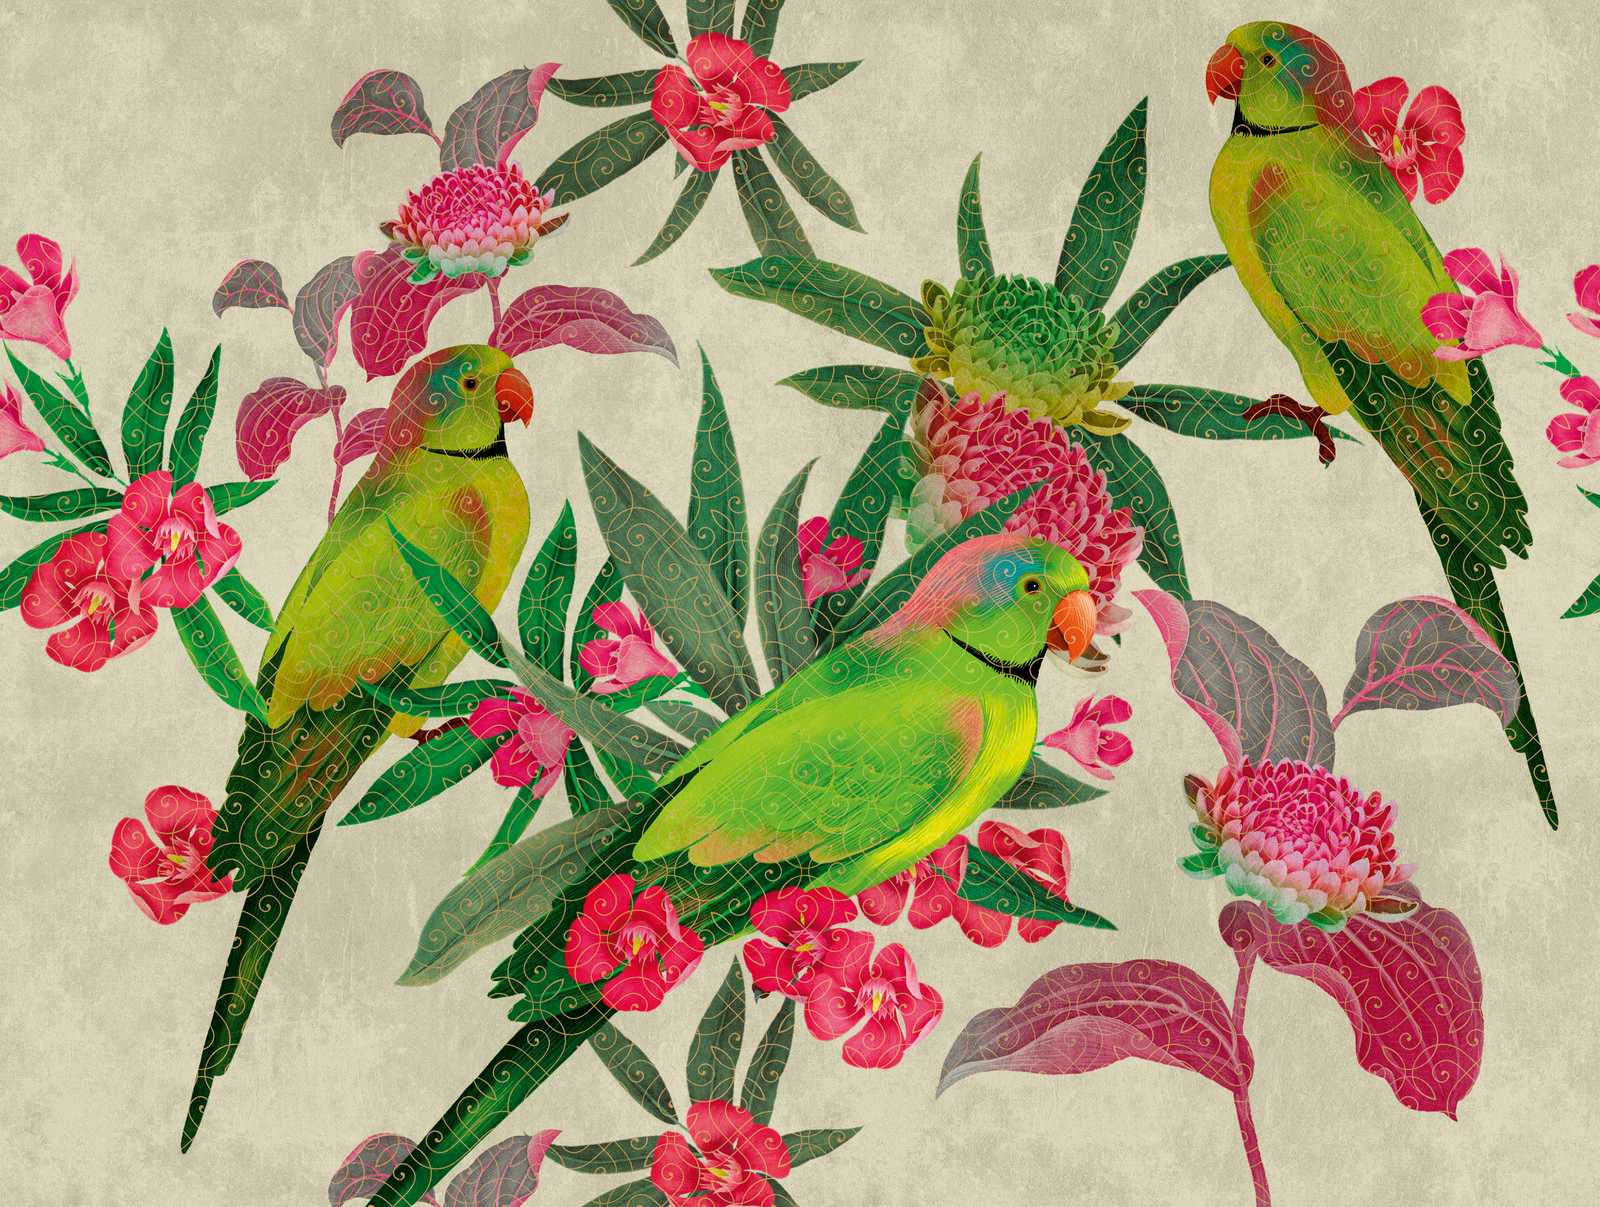             Behang nieuwigheid | papegaaien motief behang met bloemen in kunststijl
        